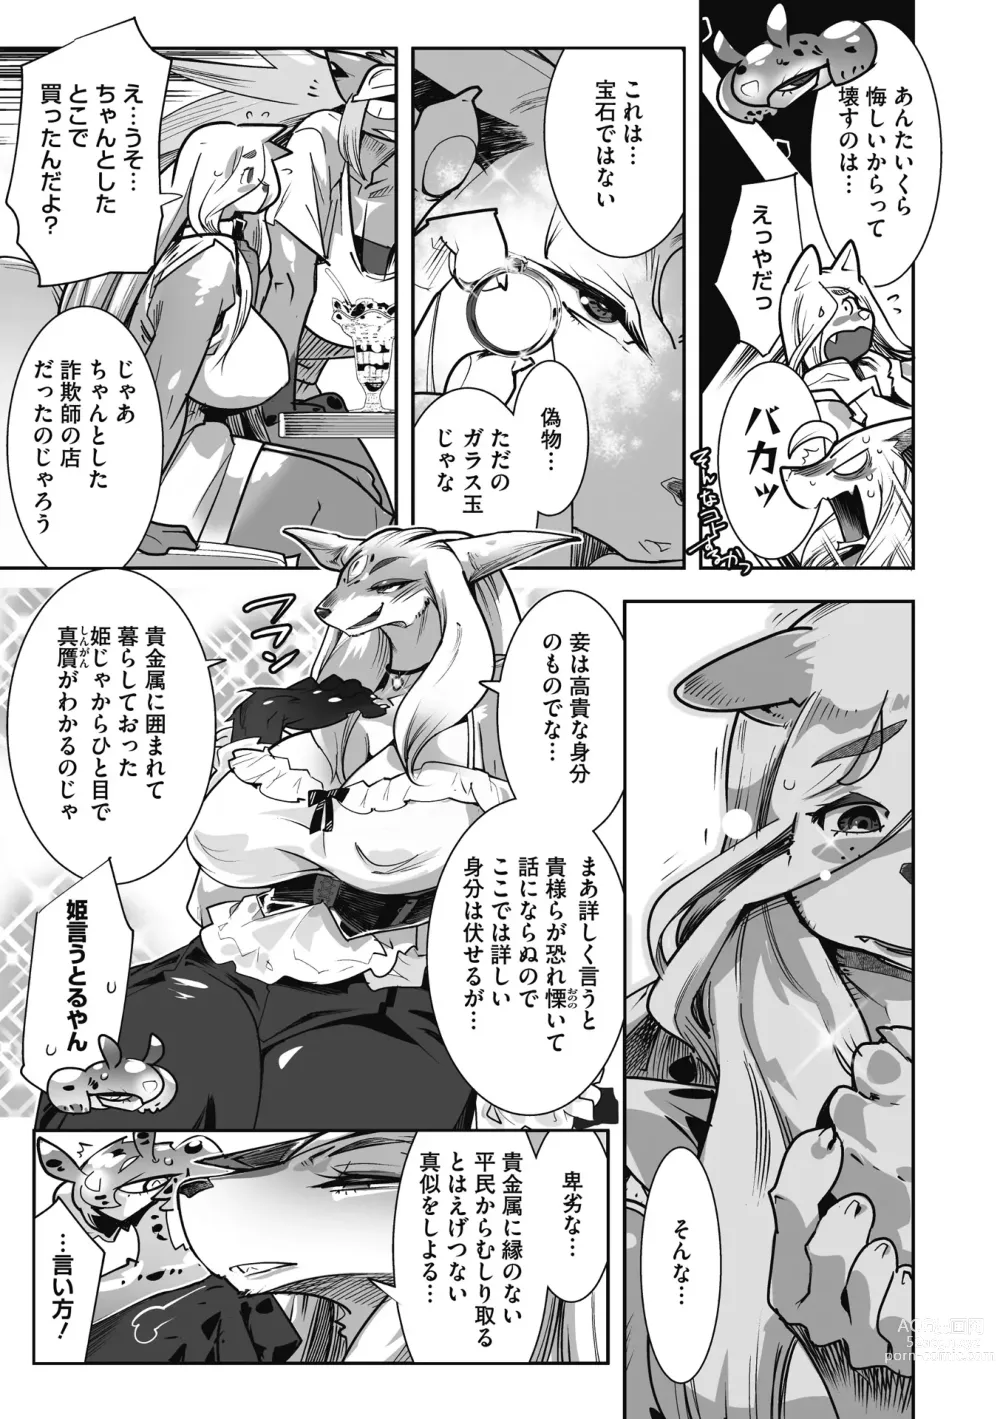 Page 229 of manga Kemono to Koishite Nani ga Warui!